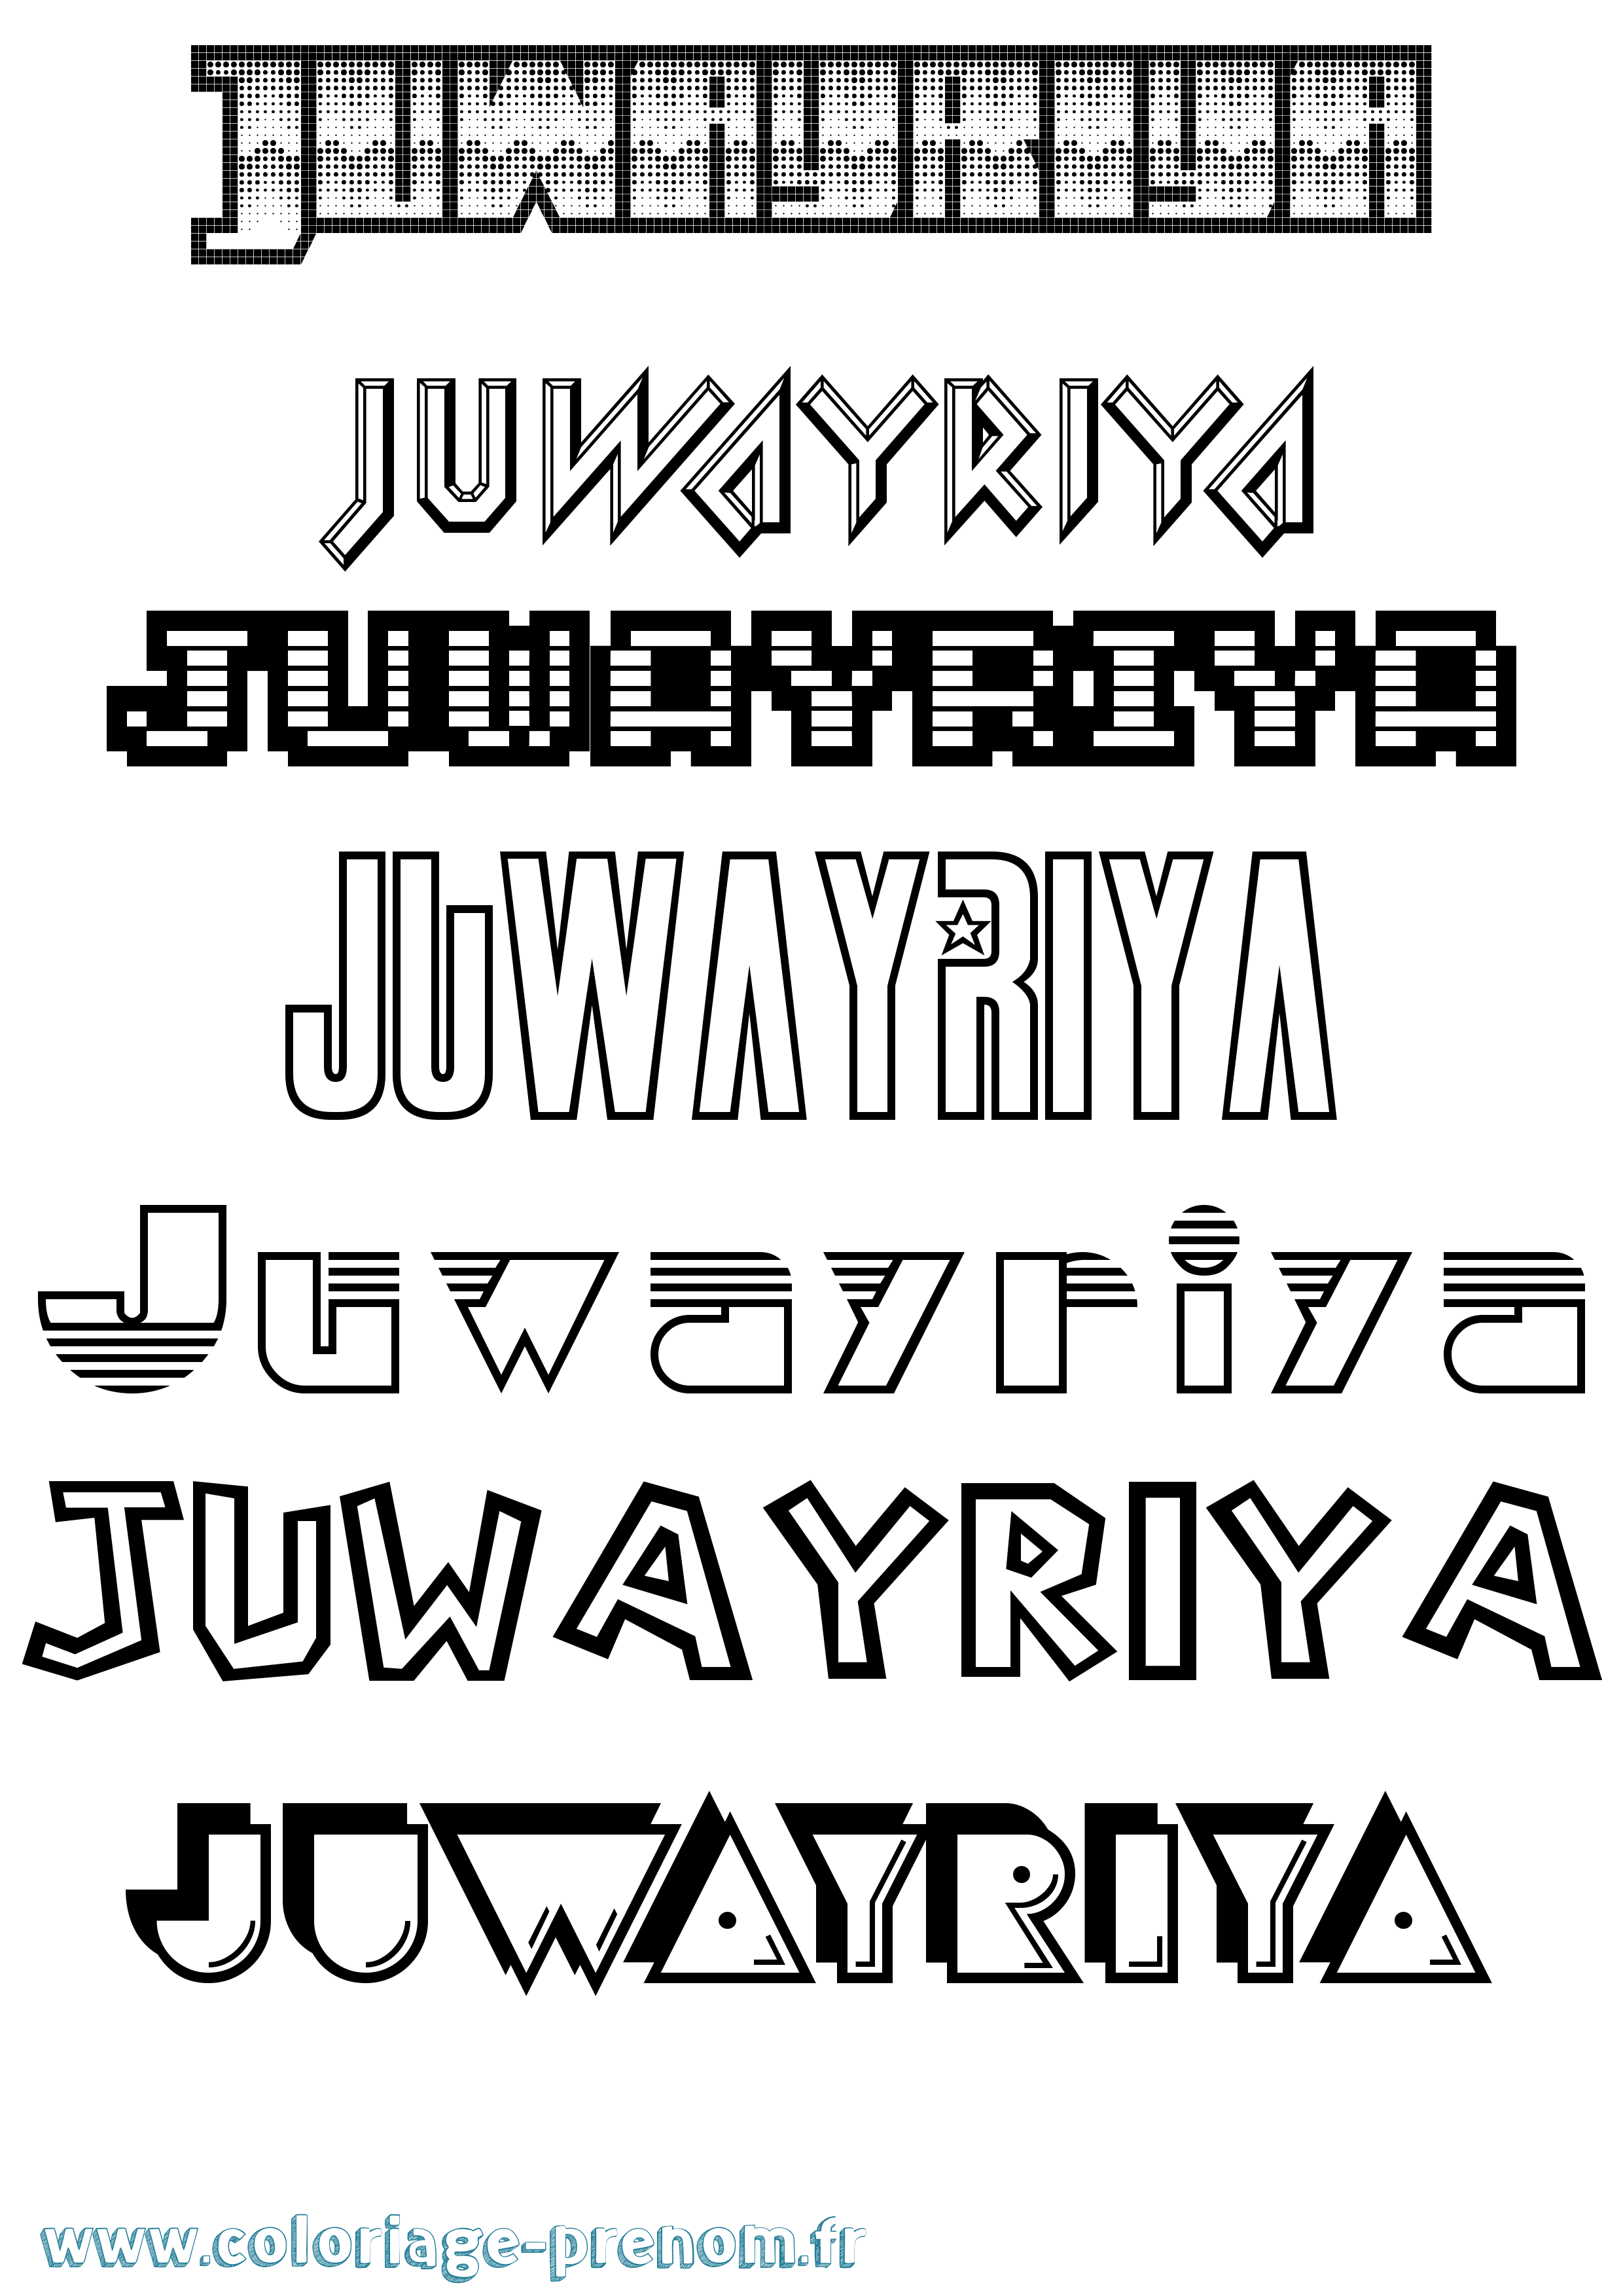 Coloriage prénom Juwayriya Jeux Vidéos